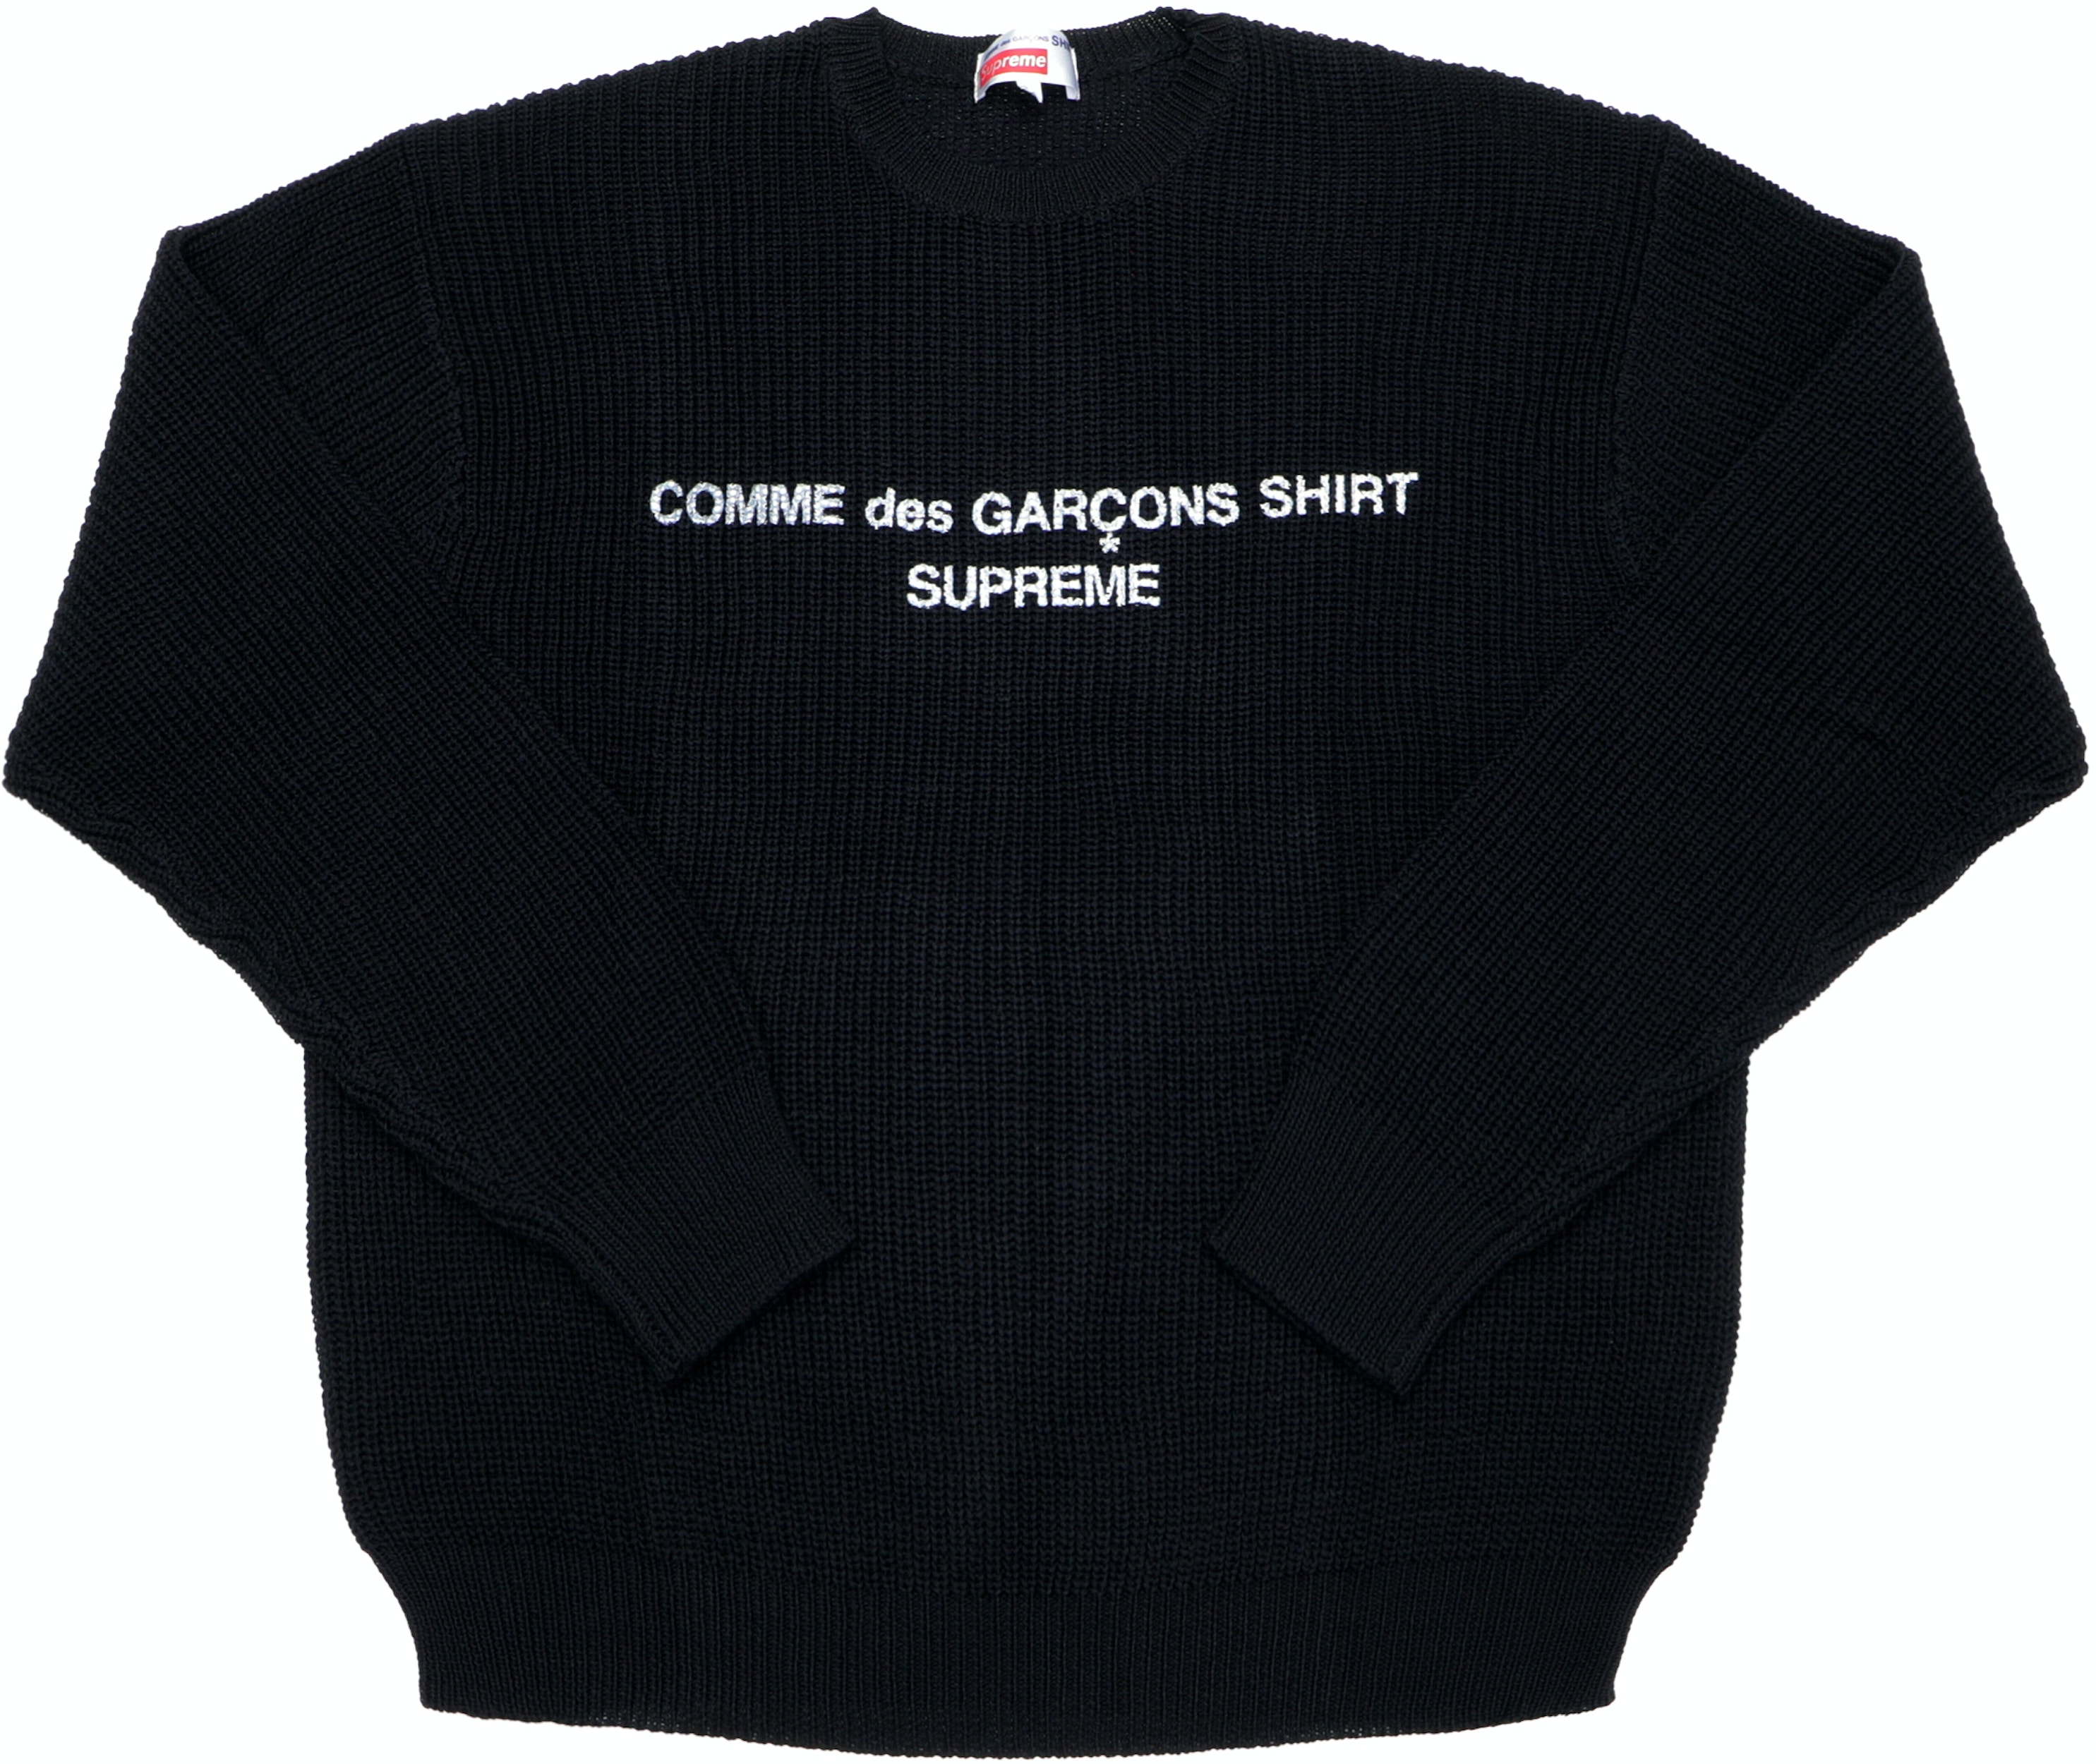 Supreme Comme des Garcons SHIRT Sweater Black - FW18